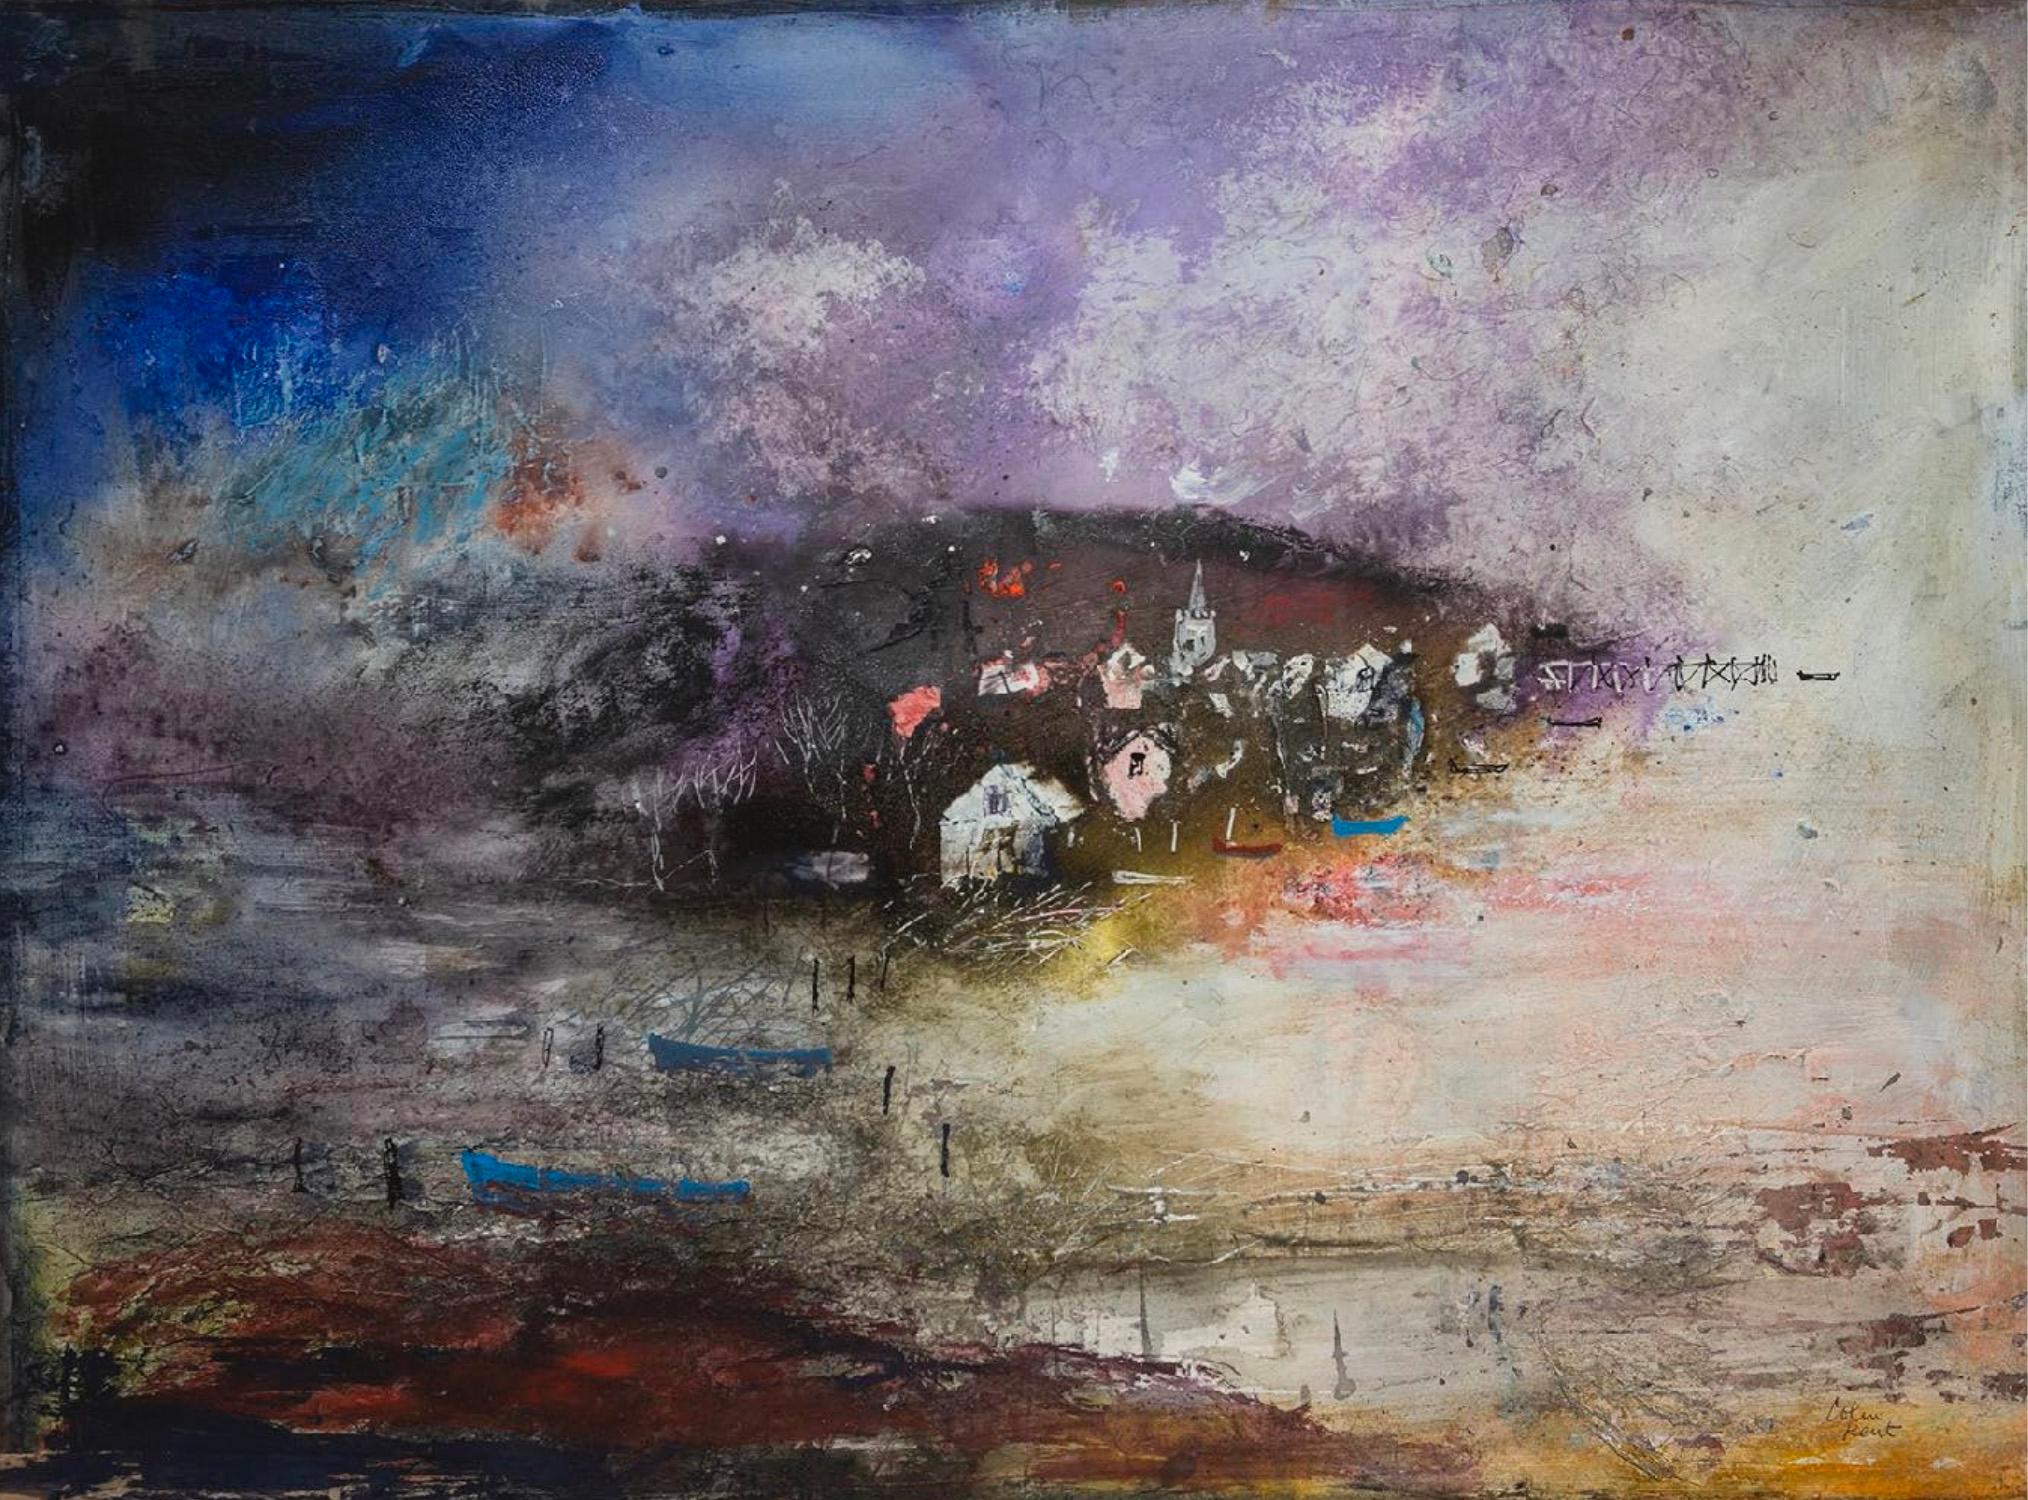 Colin Kent RWA Landscape Painting - Storm Harbour